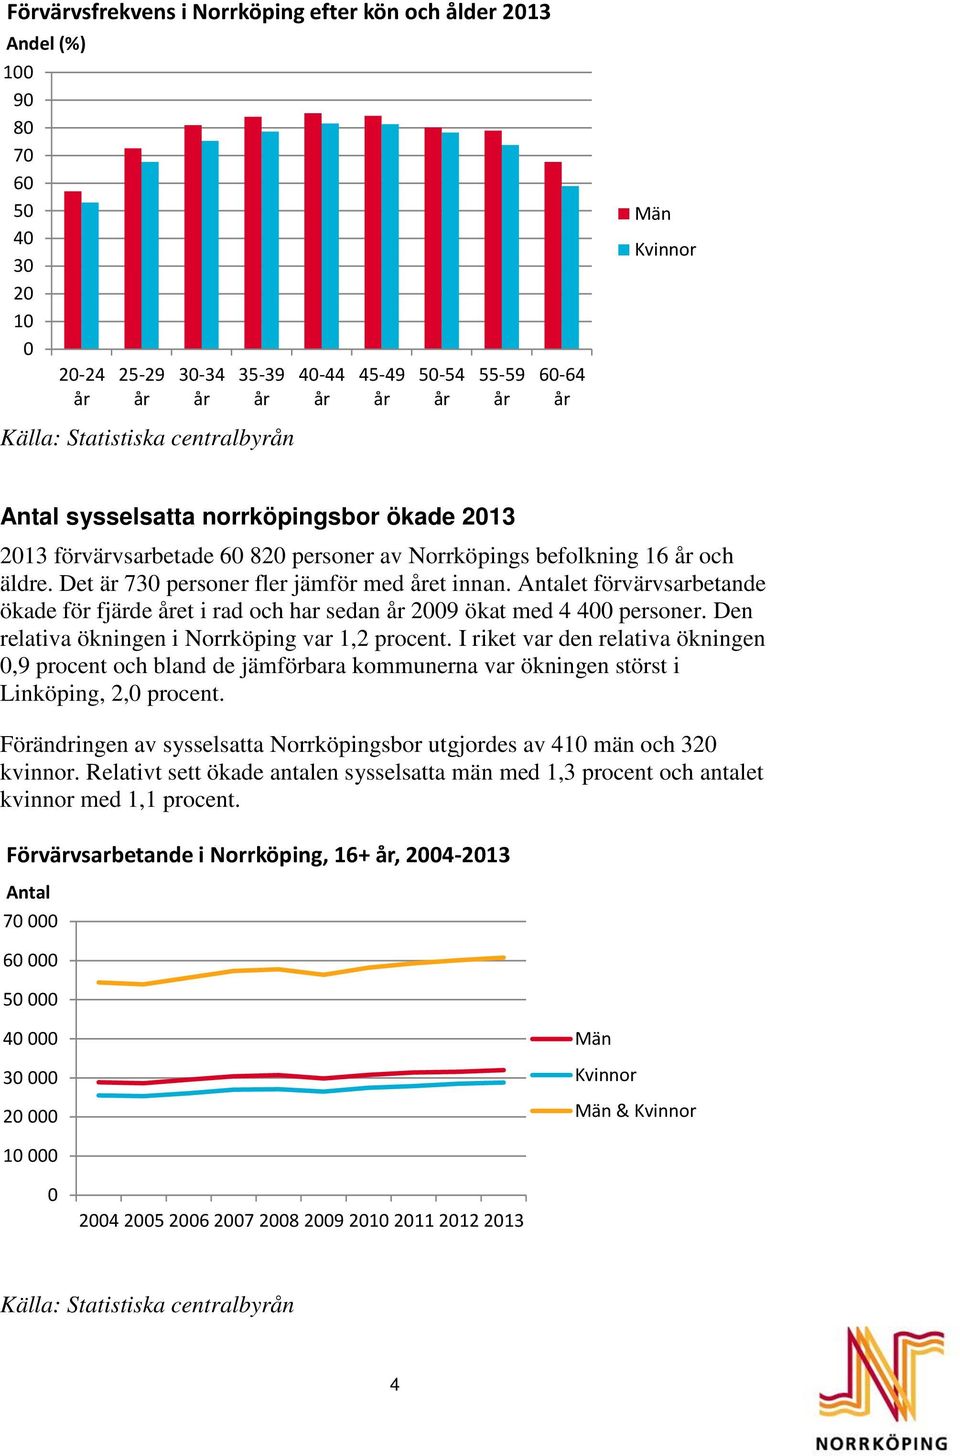 Antalet förvärvsarbetande ökade för fjärde et i rad och har sedan 2009 ökat med 4 400 personer. Den relativa ökningen i Norrköping var 1,2 procent.